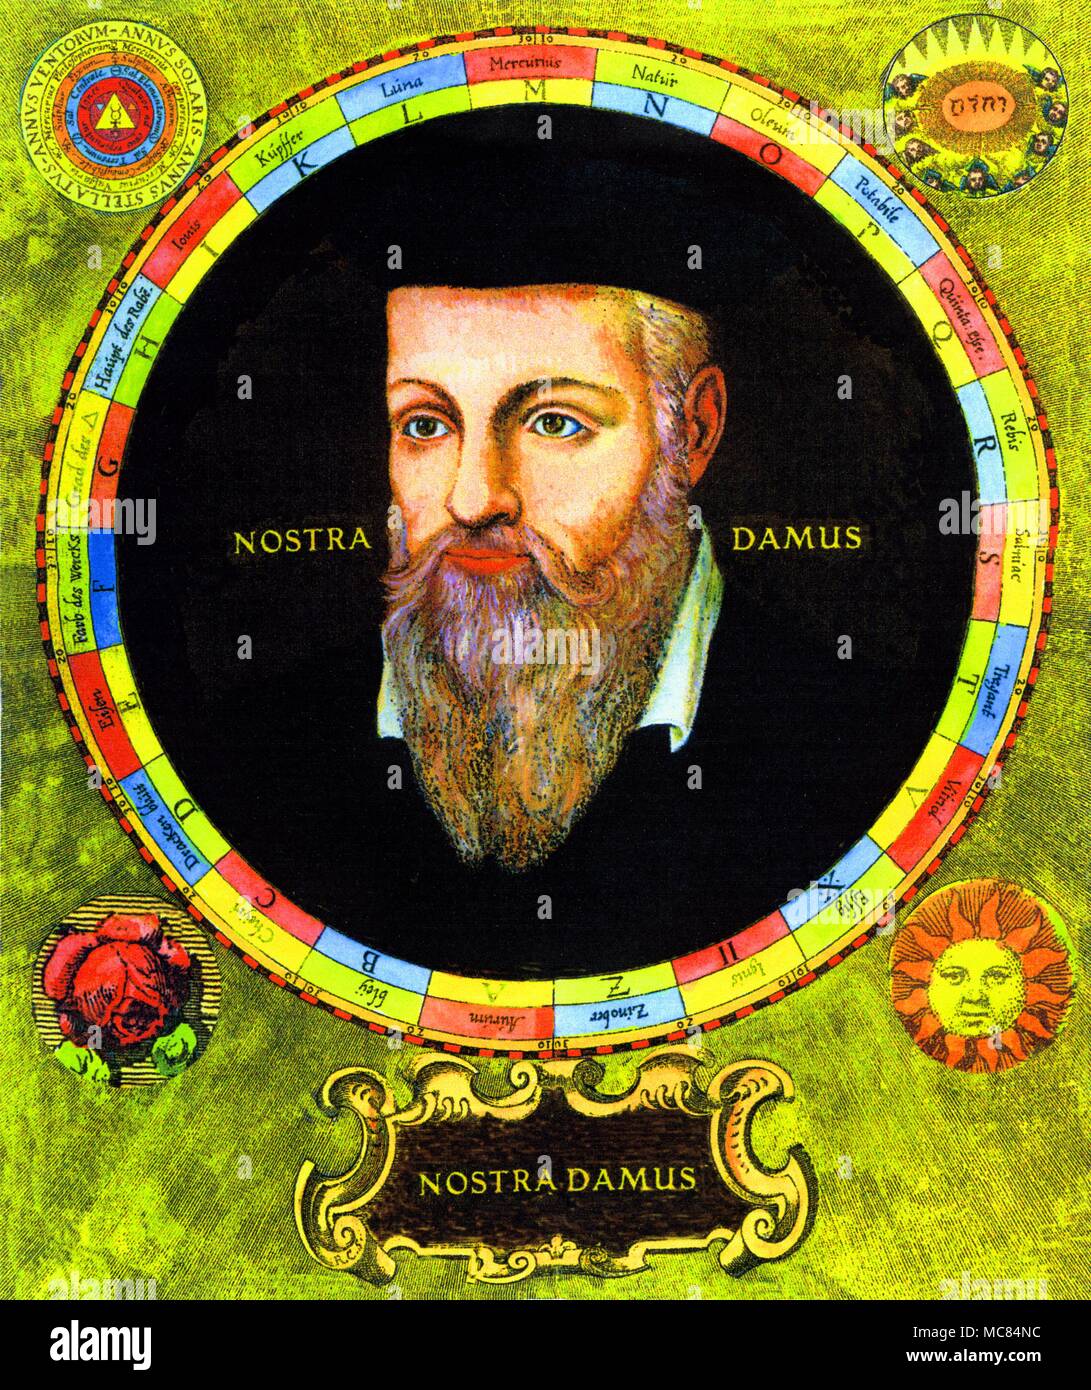 Retrato circular de Nostradamus, situado dentro de un marco de símbolos arcanos deriva de la tradición alquímica. Foto de stock